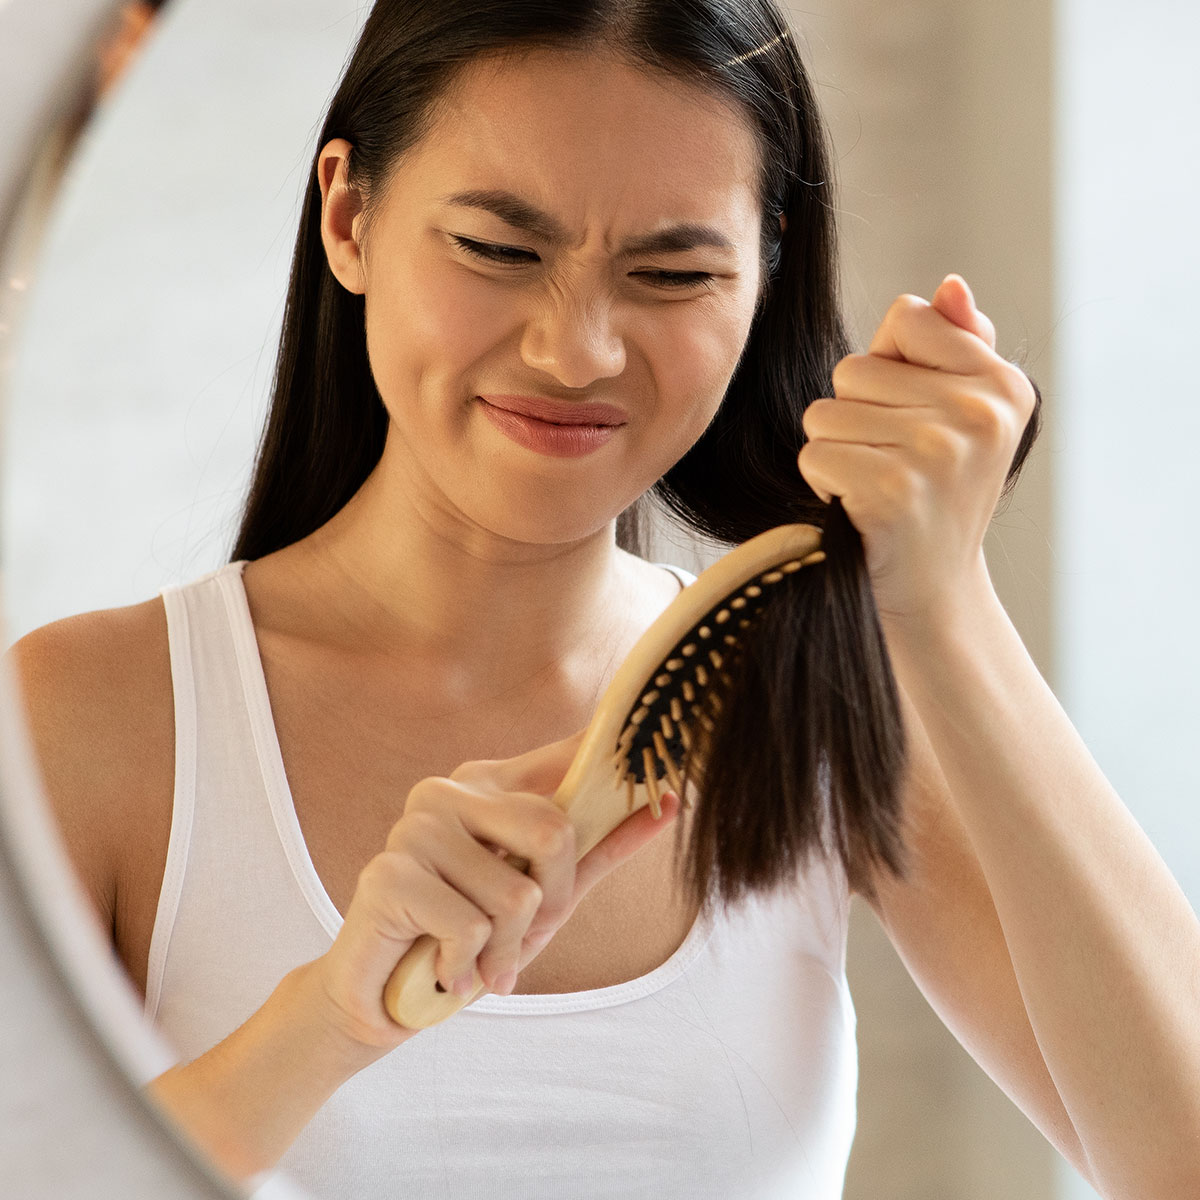 Hãy chắc chắn rằng bạn làm khô tóc thật kỹ bằng khăn sợi nhỏ siêu thấm trước khi chải tóc.